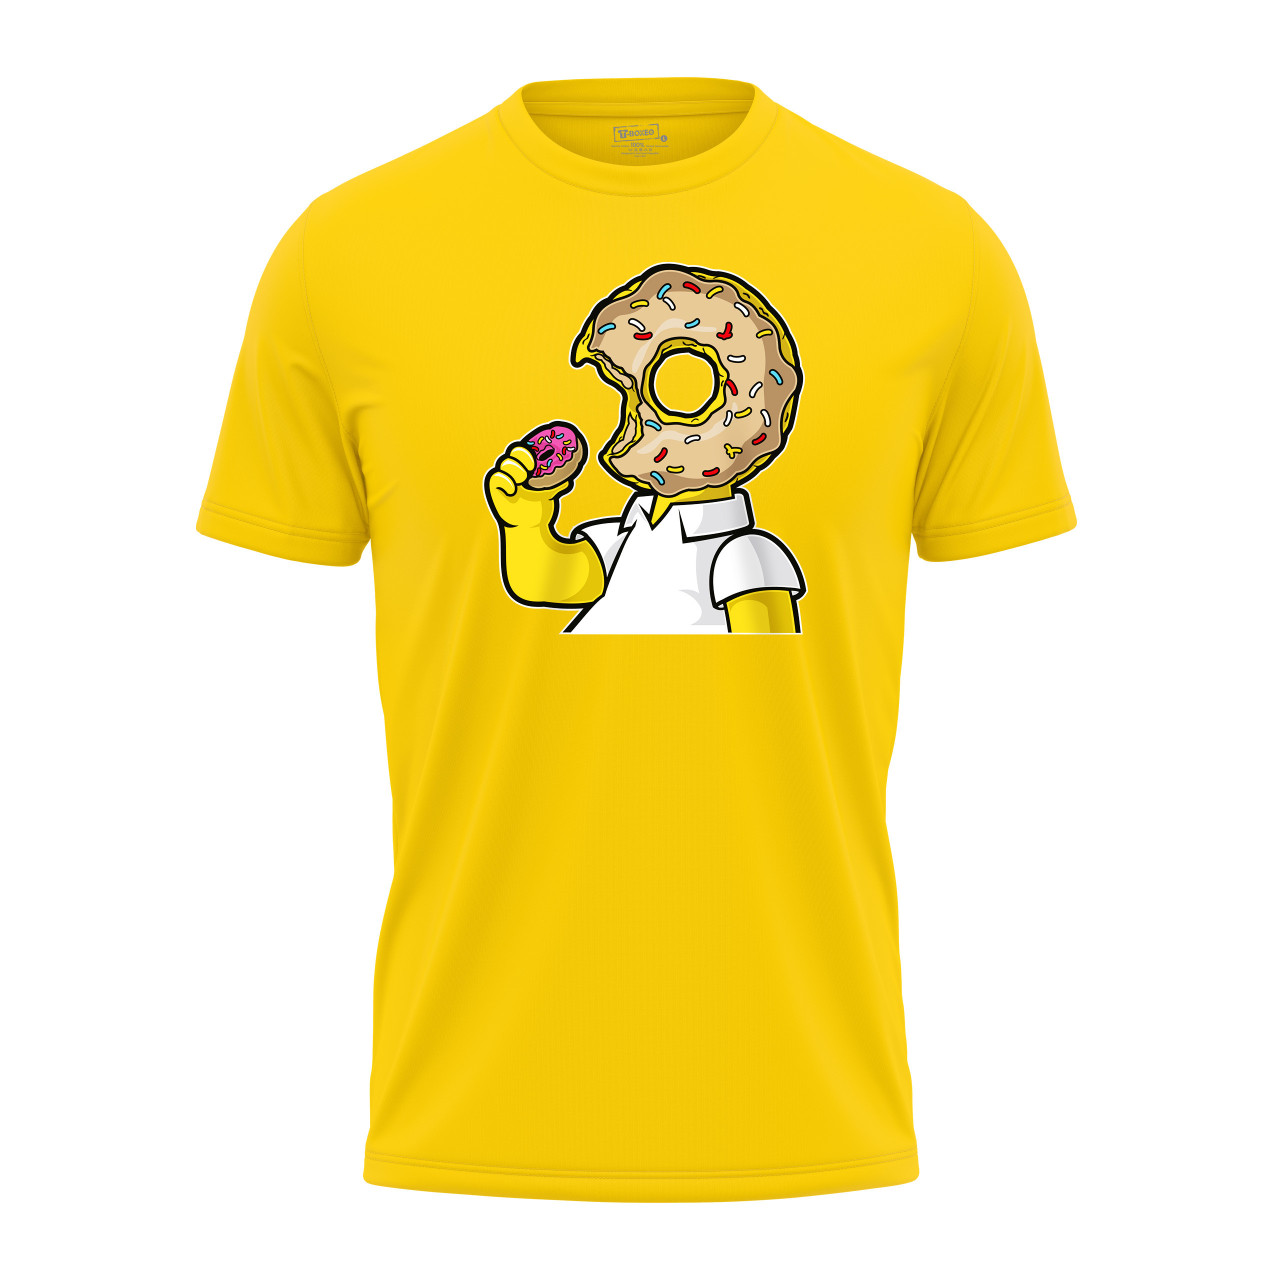 Pánské tričko s potiskem “Homer s koblihovou hlavou”